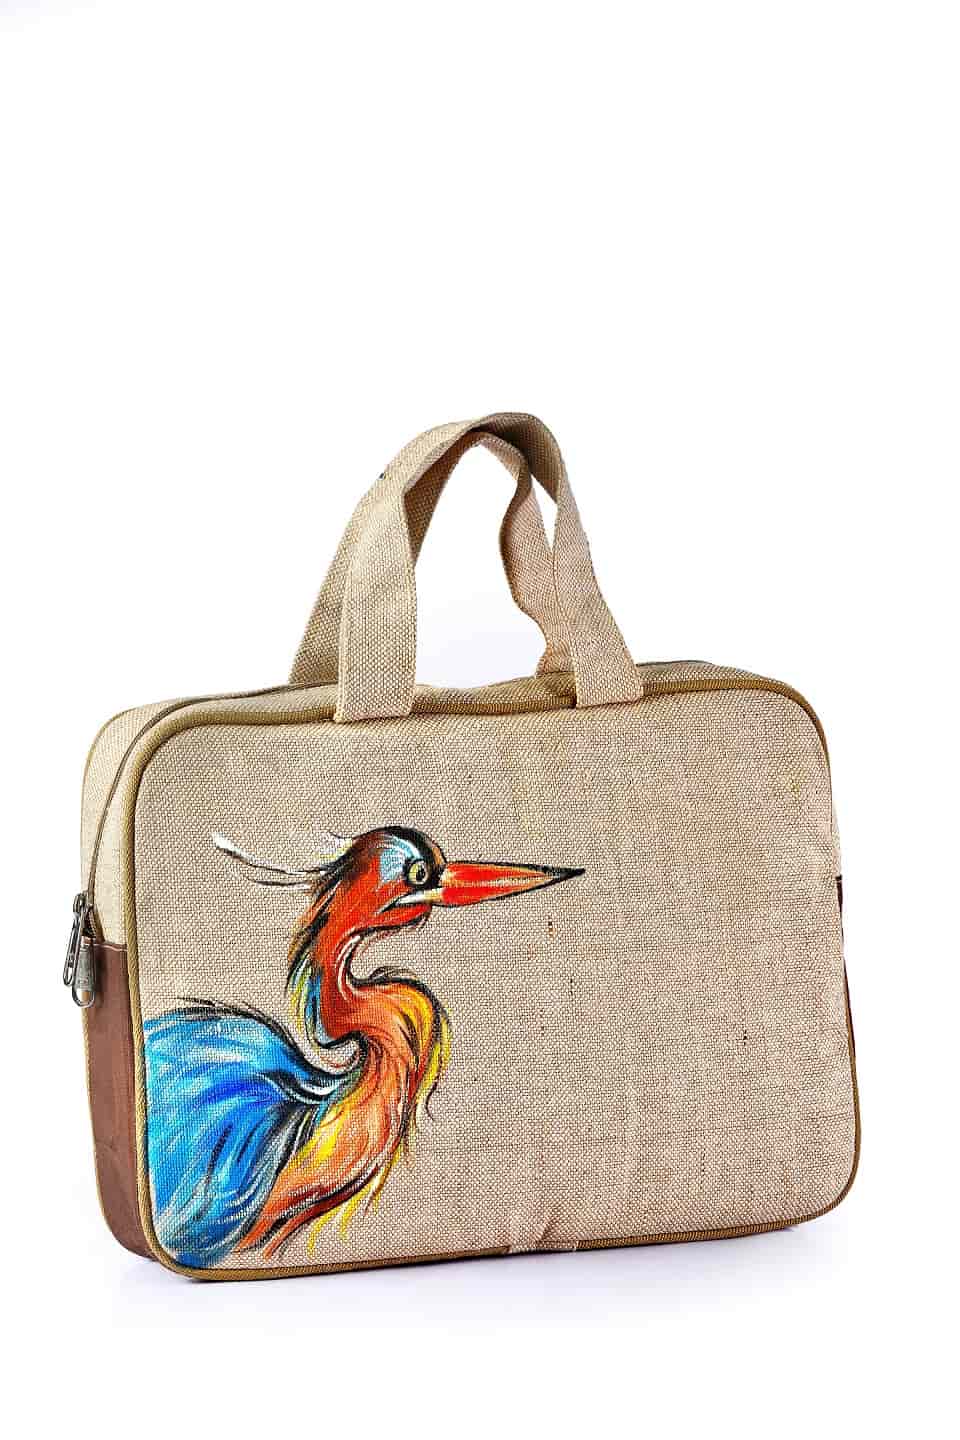 Natural Jute Kalamkari Bags, Design/Pattern: Plain, Capacity: 10kg at Rs  110/bag in Ahmedabad